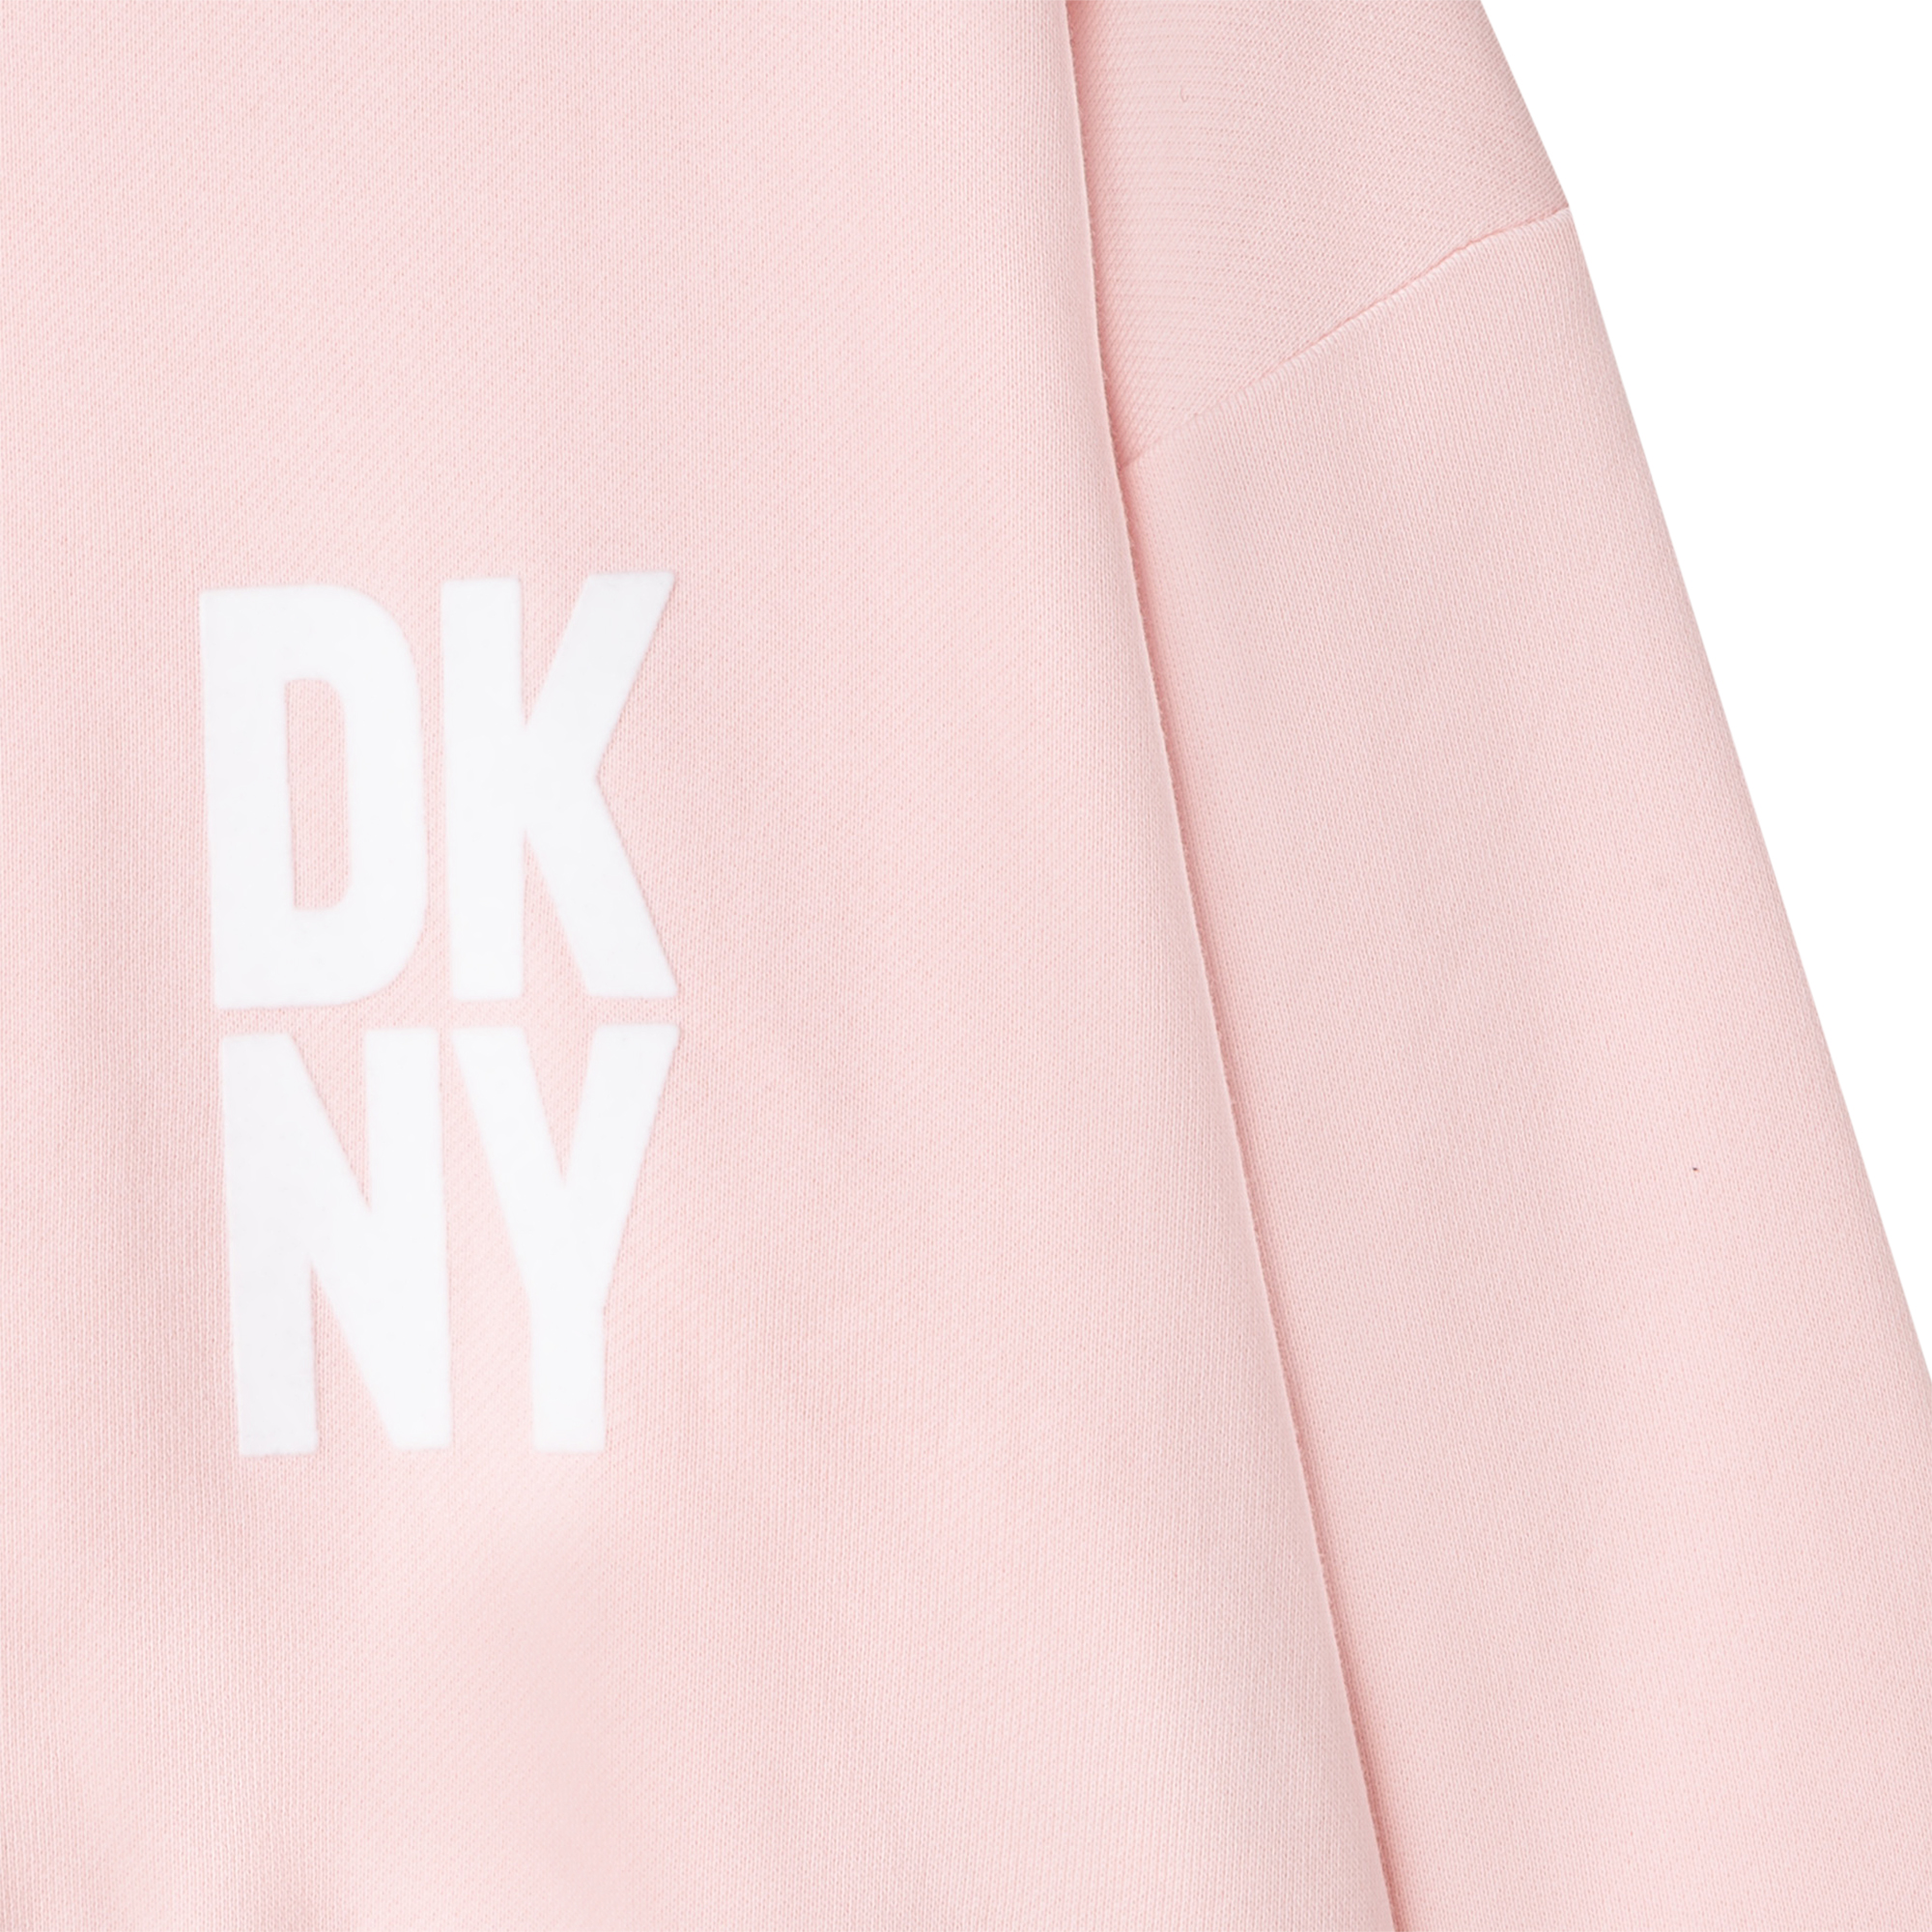 Fleece-sweater met logo DKNY Voor